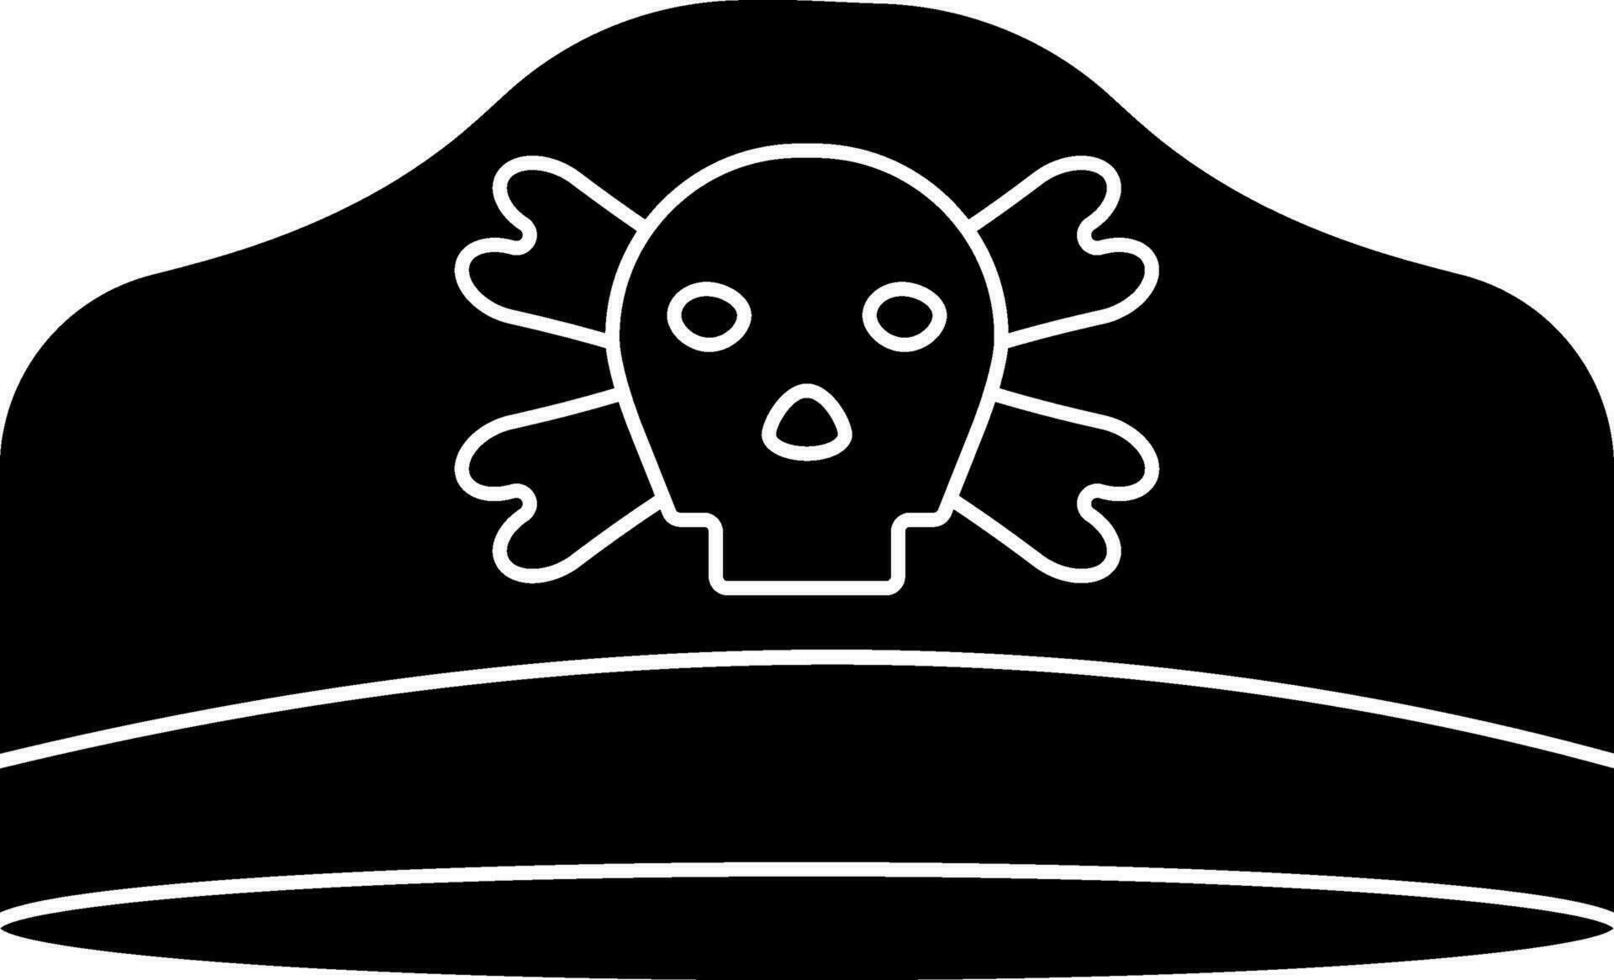 schwarz und Weiß Pirat Hut Symbol im eben Stil. vektor